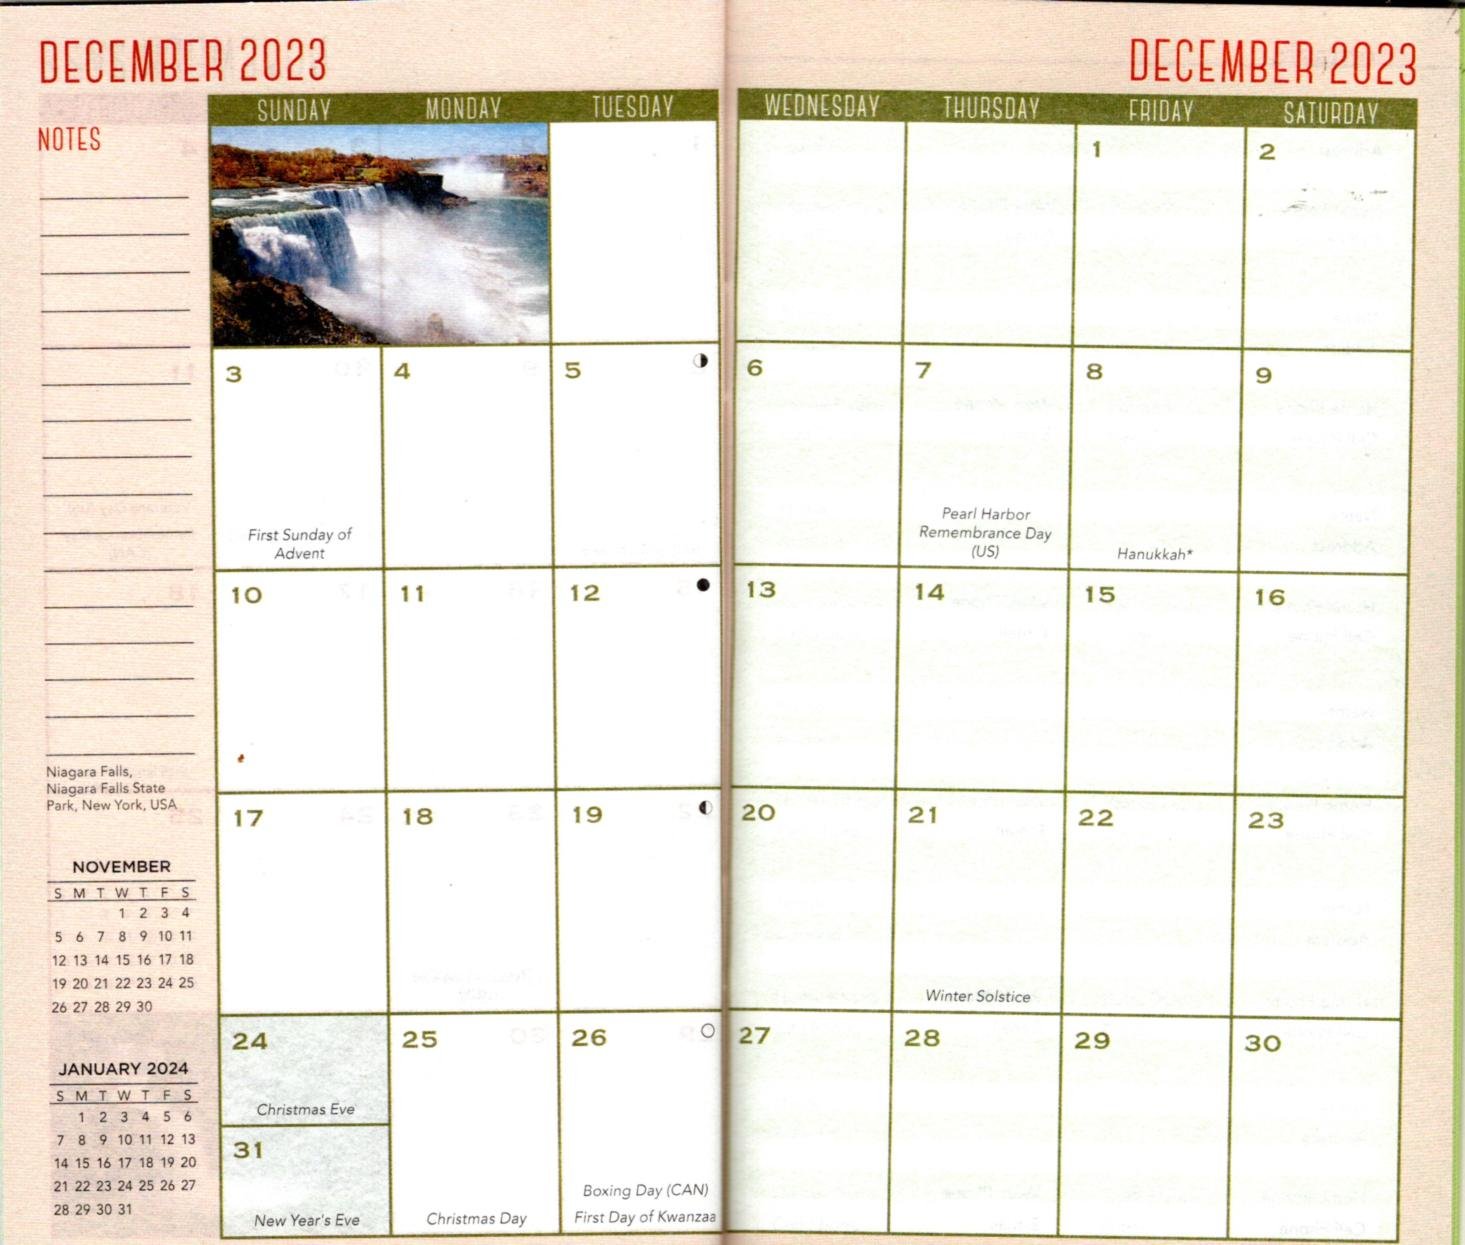 Lehman Calendar Spring 2022 - Customize and Print